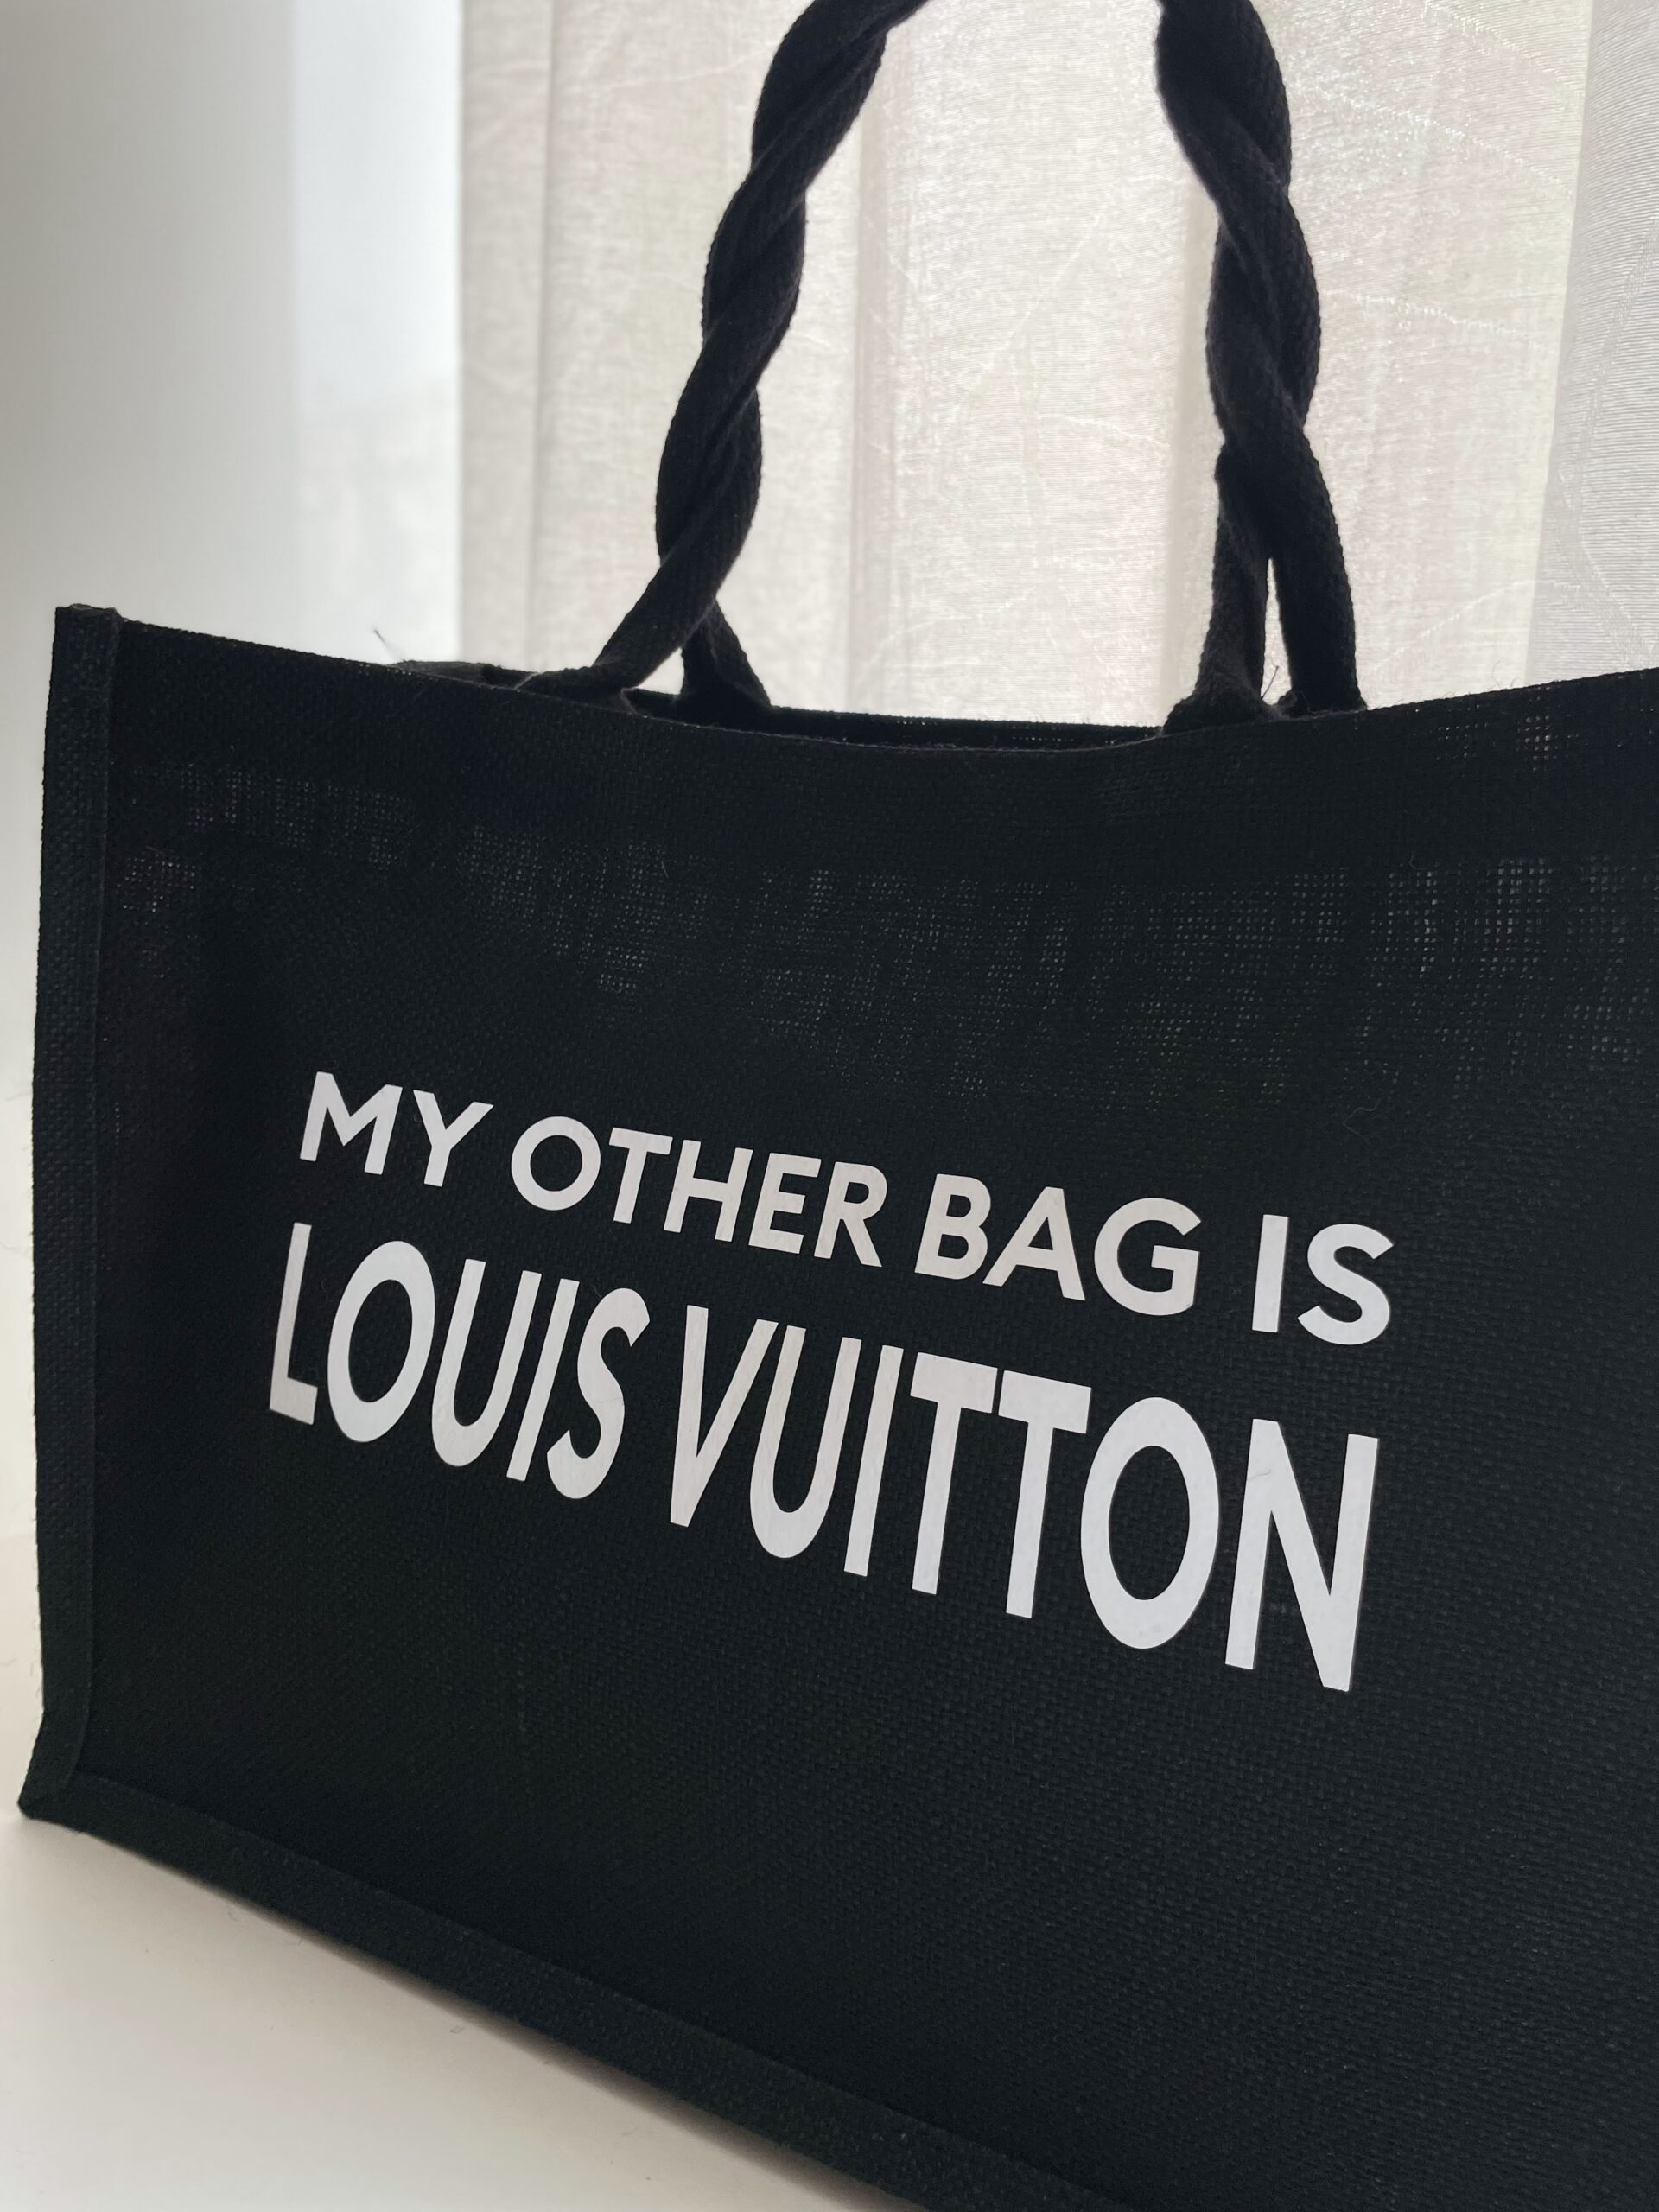 Jute Shopper My other bag is Chanel geschikt als boodschappentas of  strandtas, 42 x 33